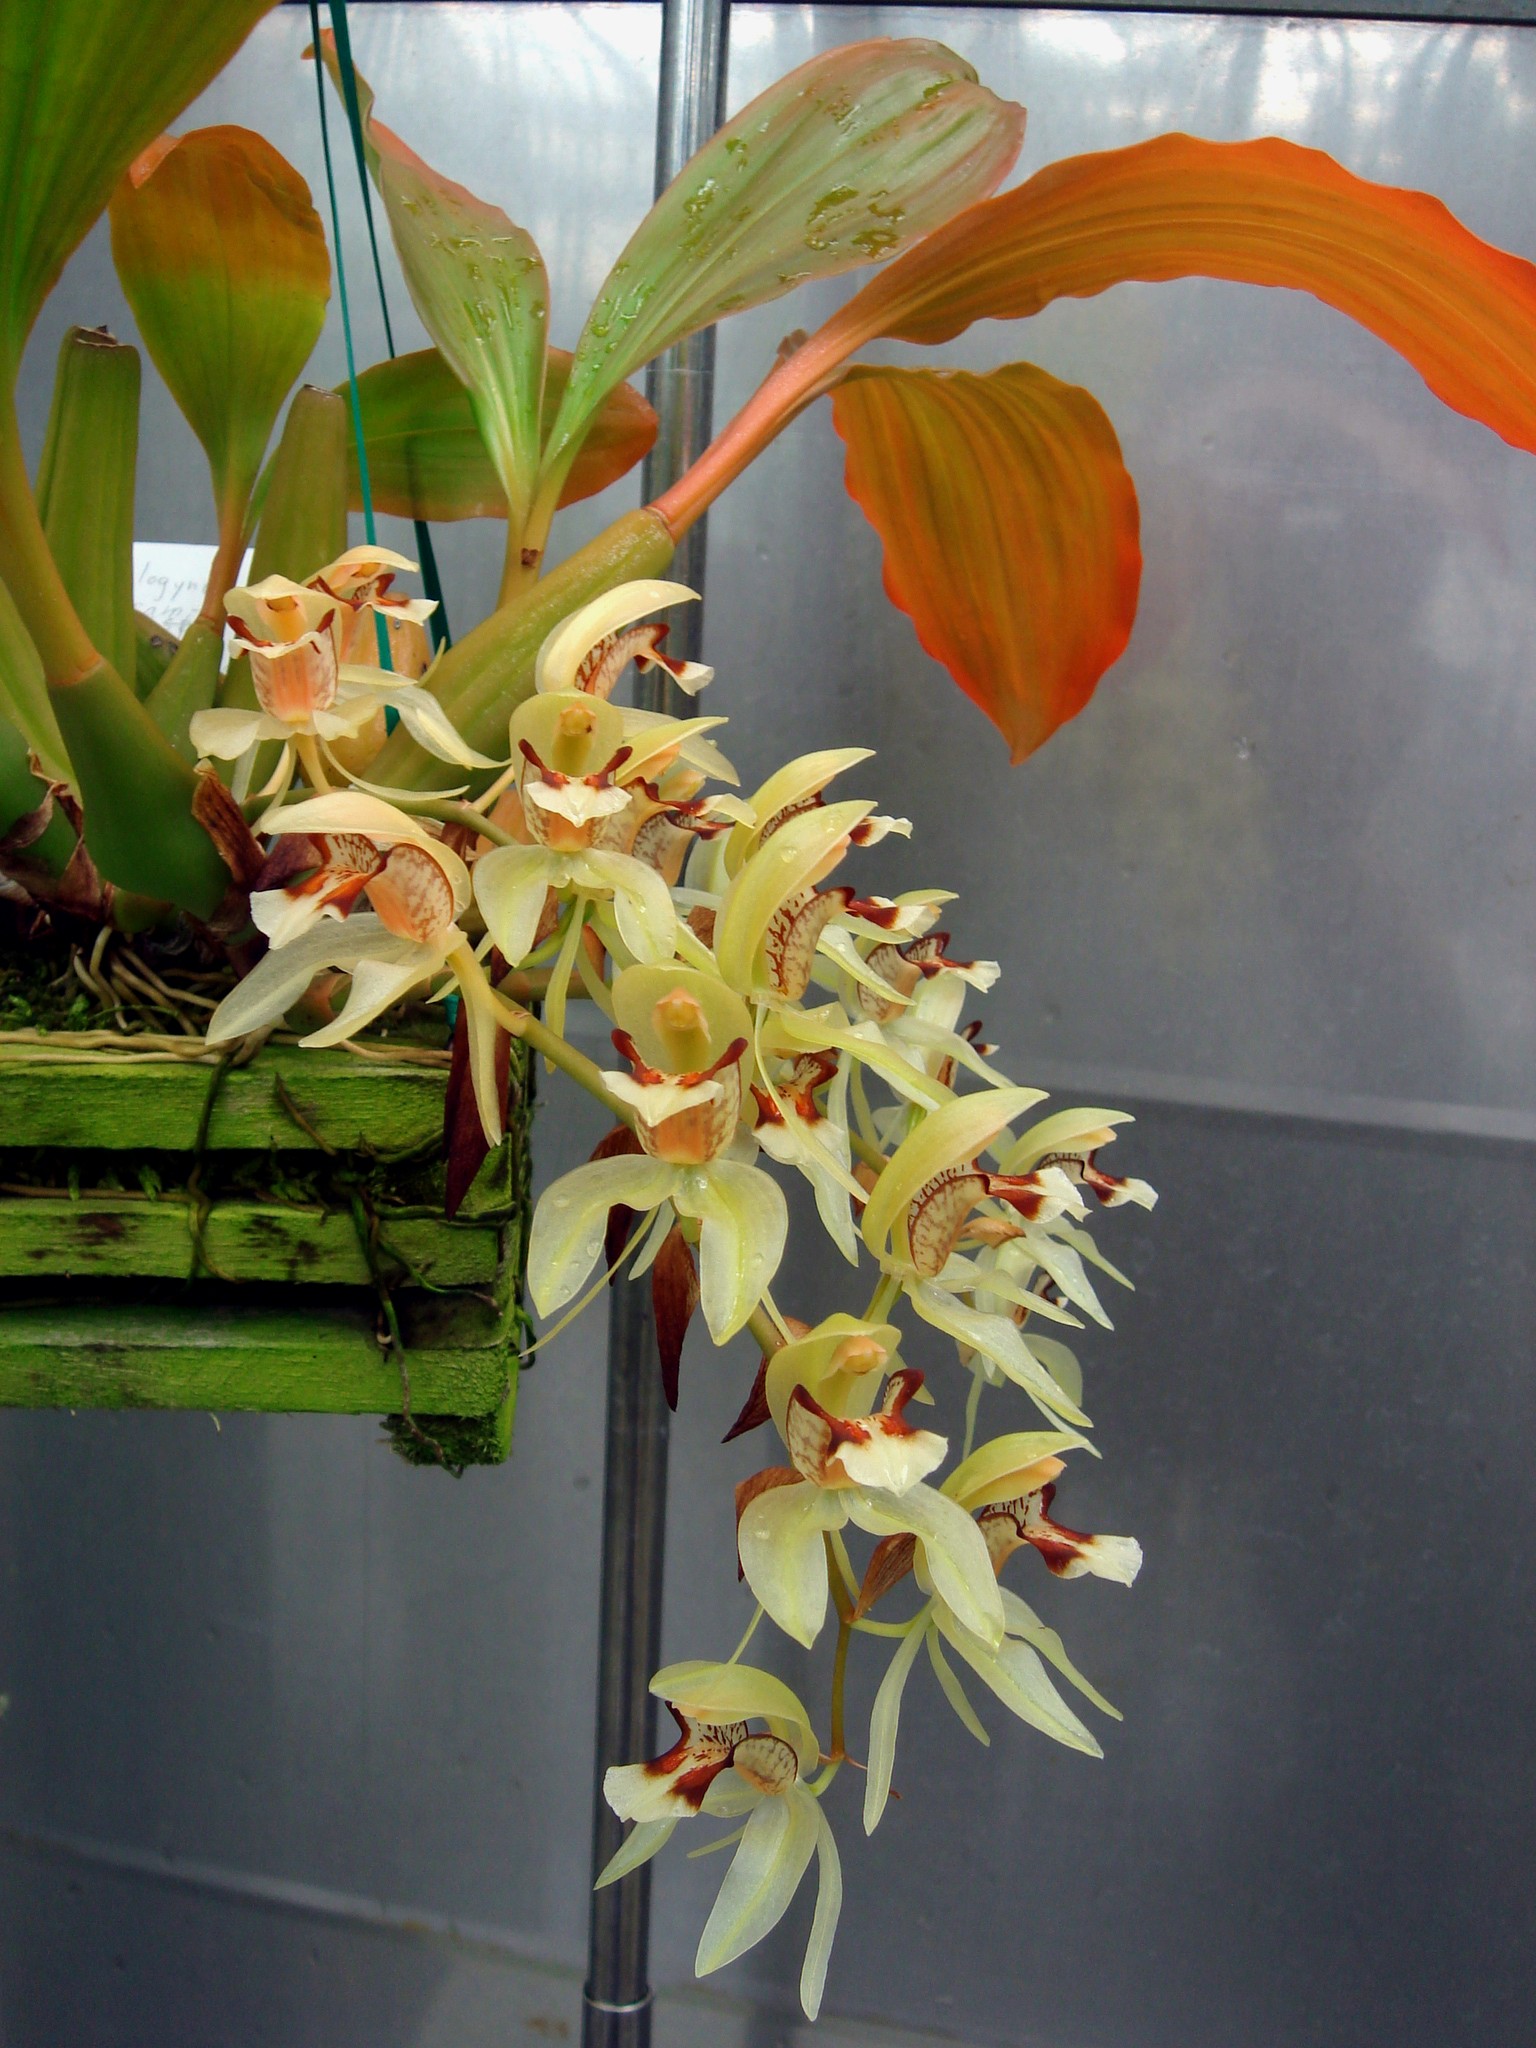 http://orchids.la.coocan.jp/Coelogyne/Coelogyne%20assamica/DSC09341.JPG